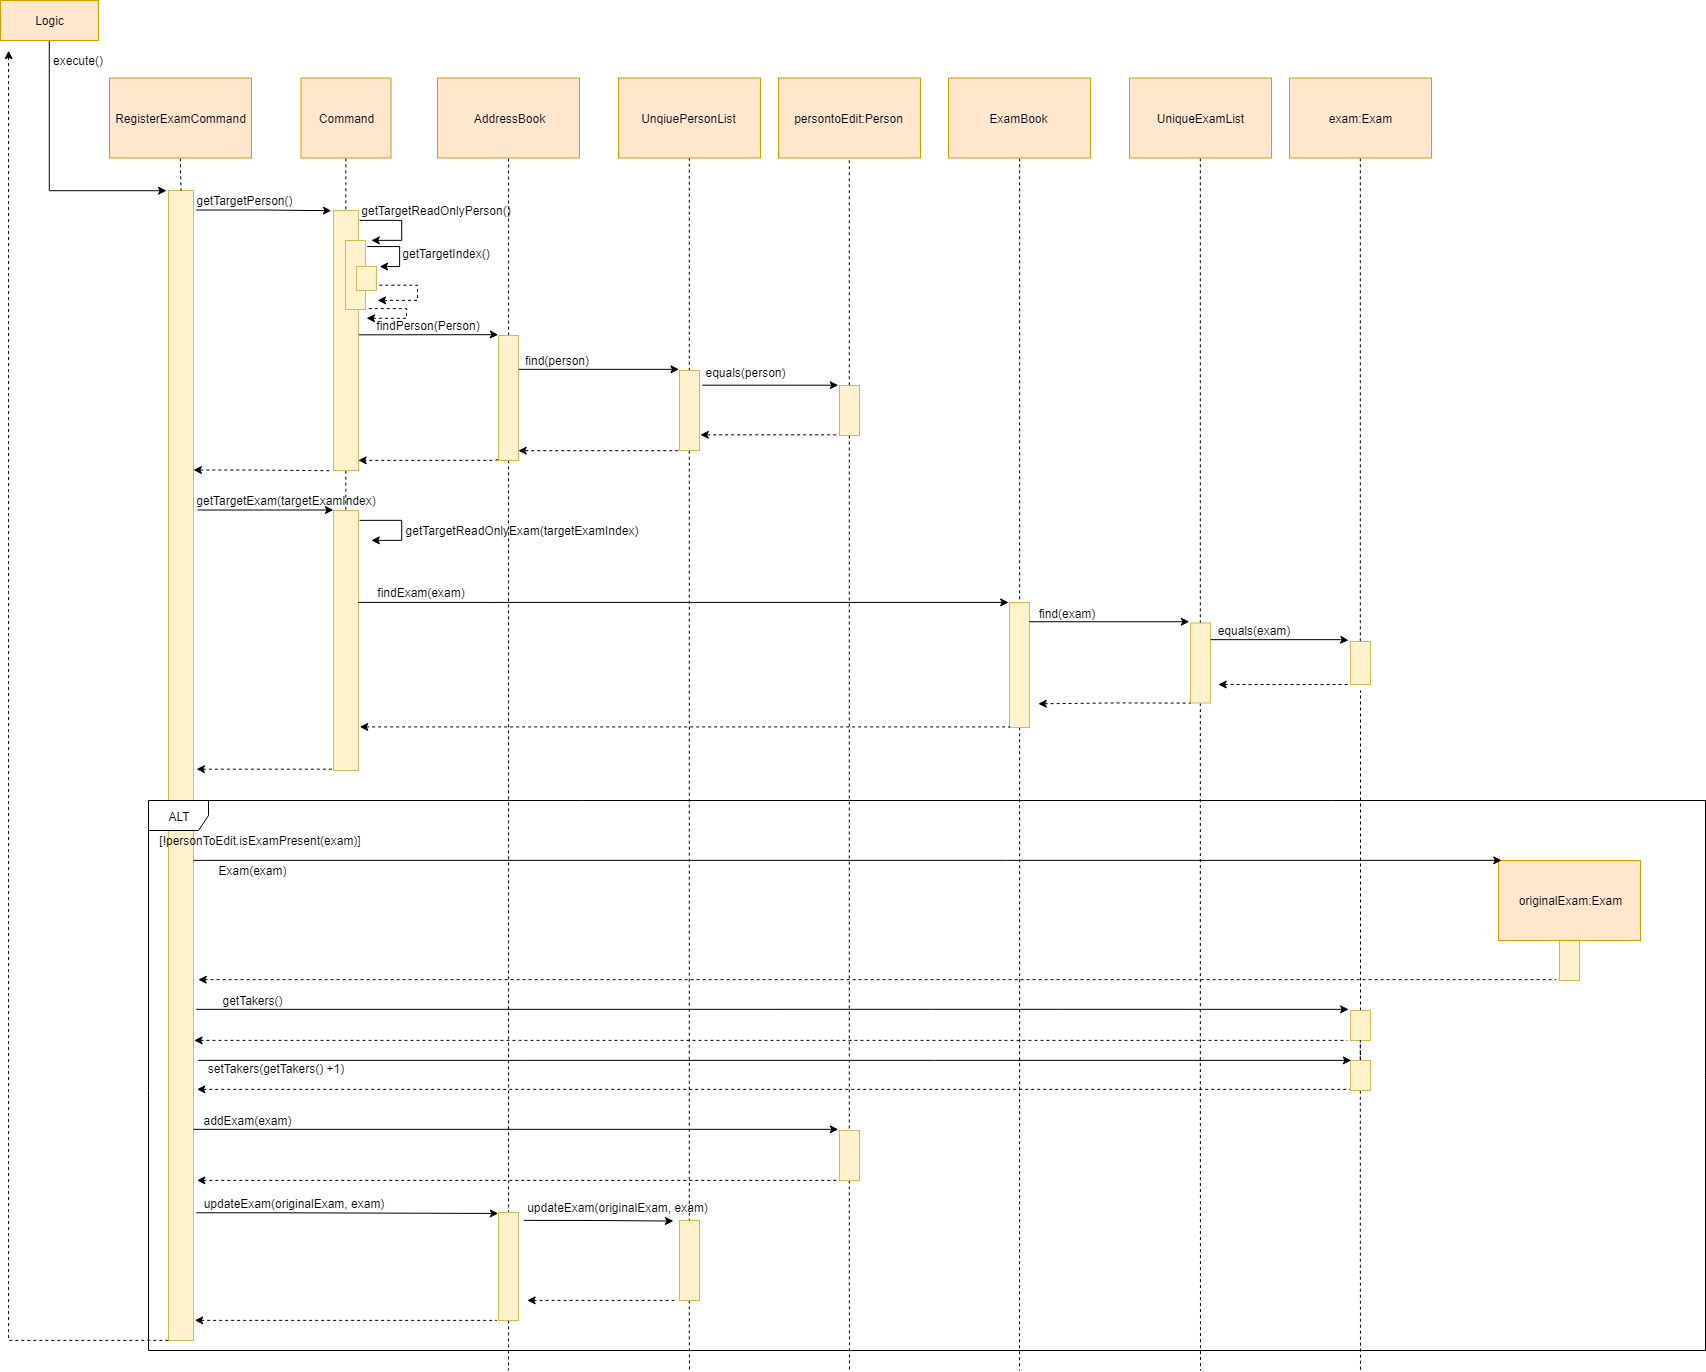 RegisterExam Sequence Diagram